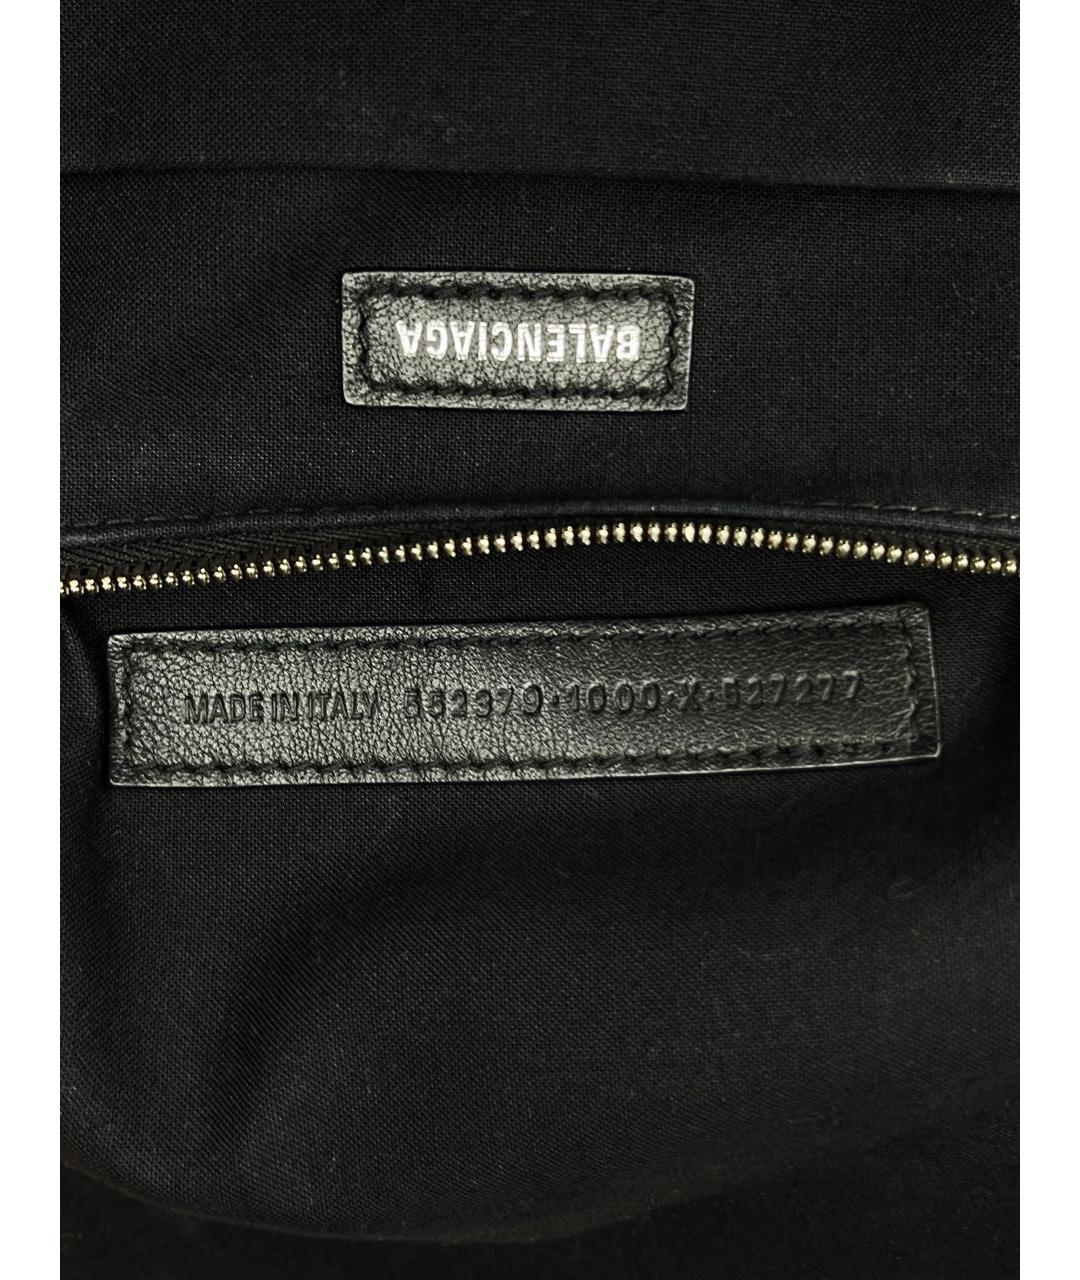 BALENCIAGA Черный кожаный рюкзак, фото 7